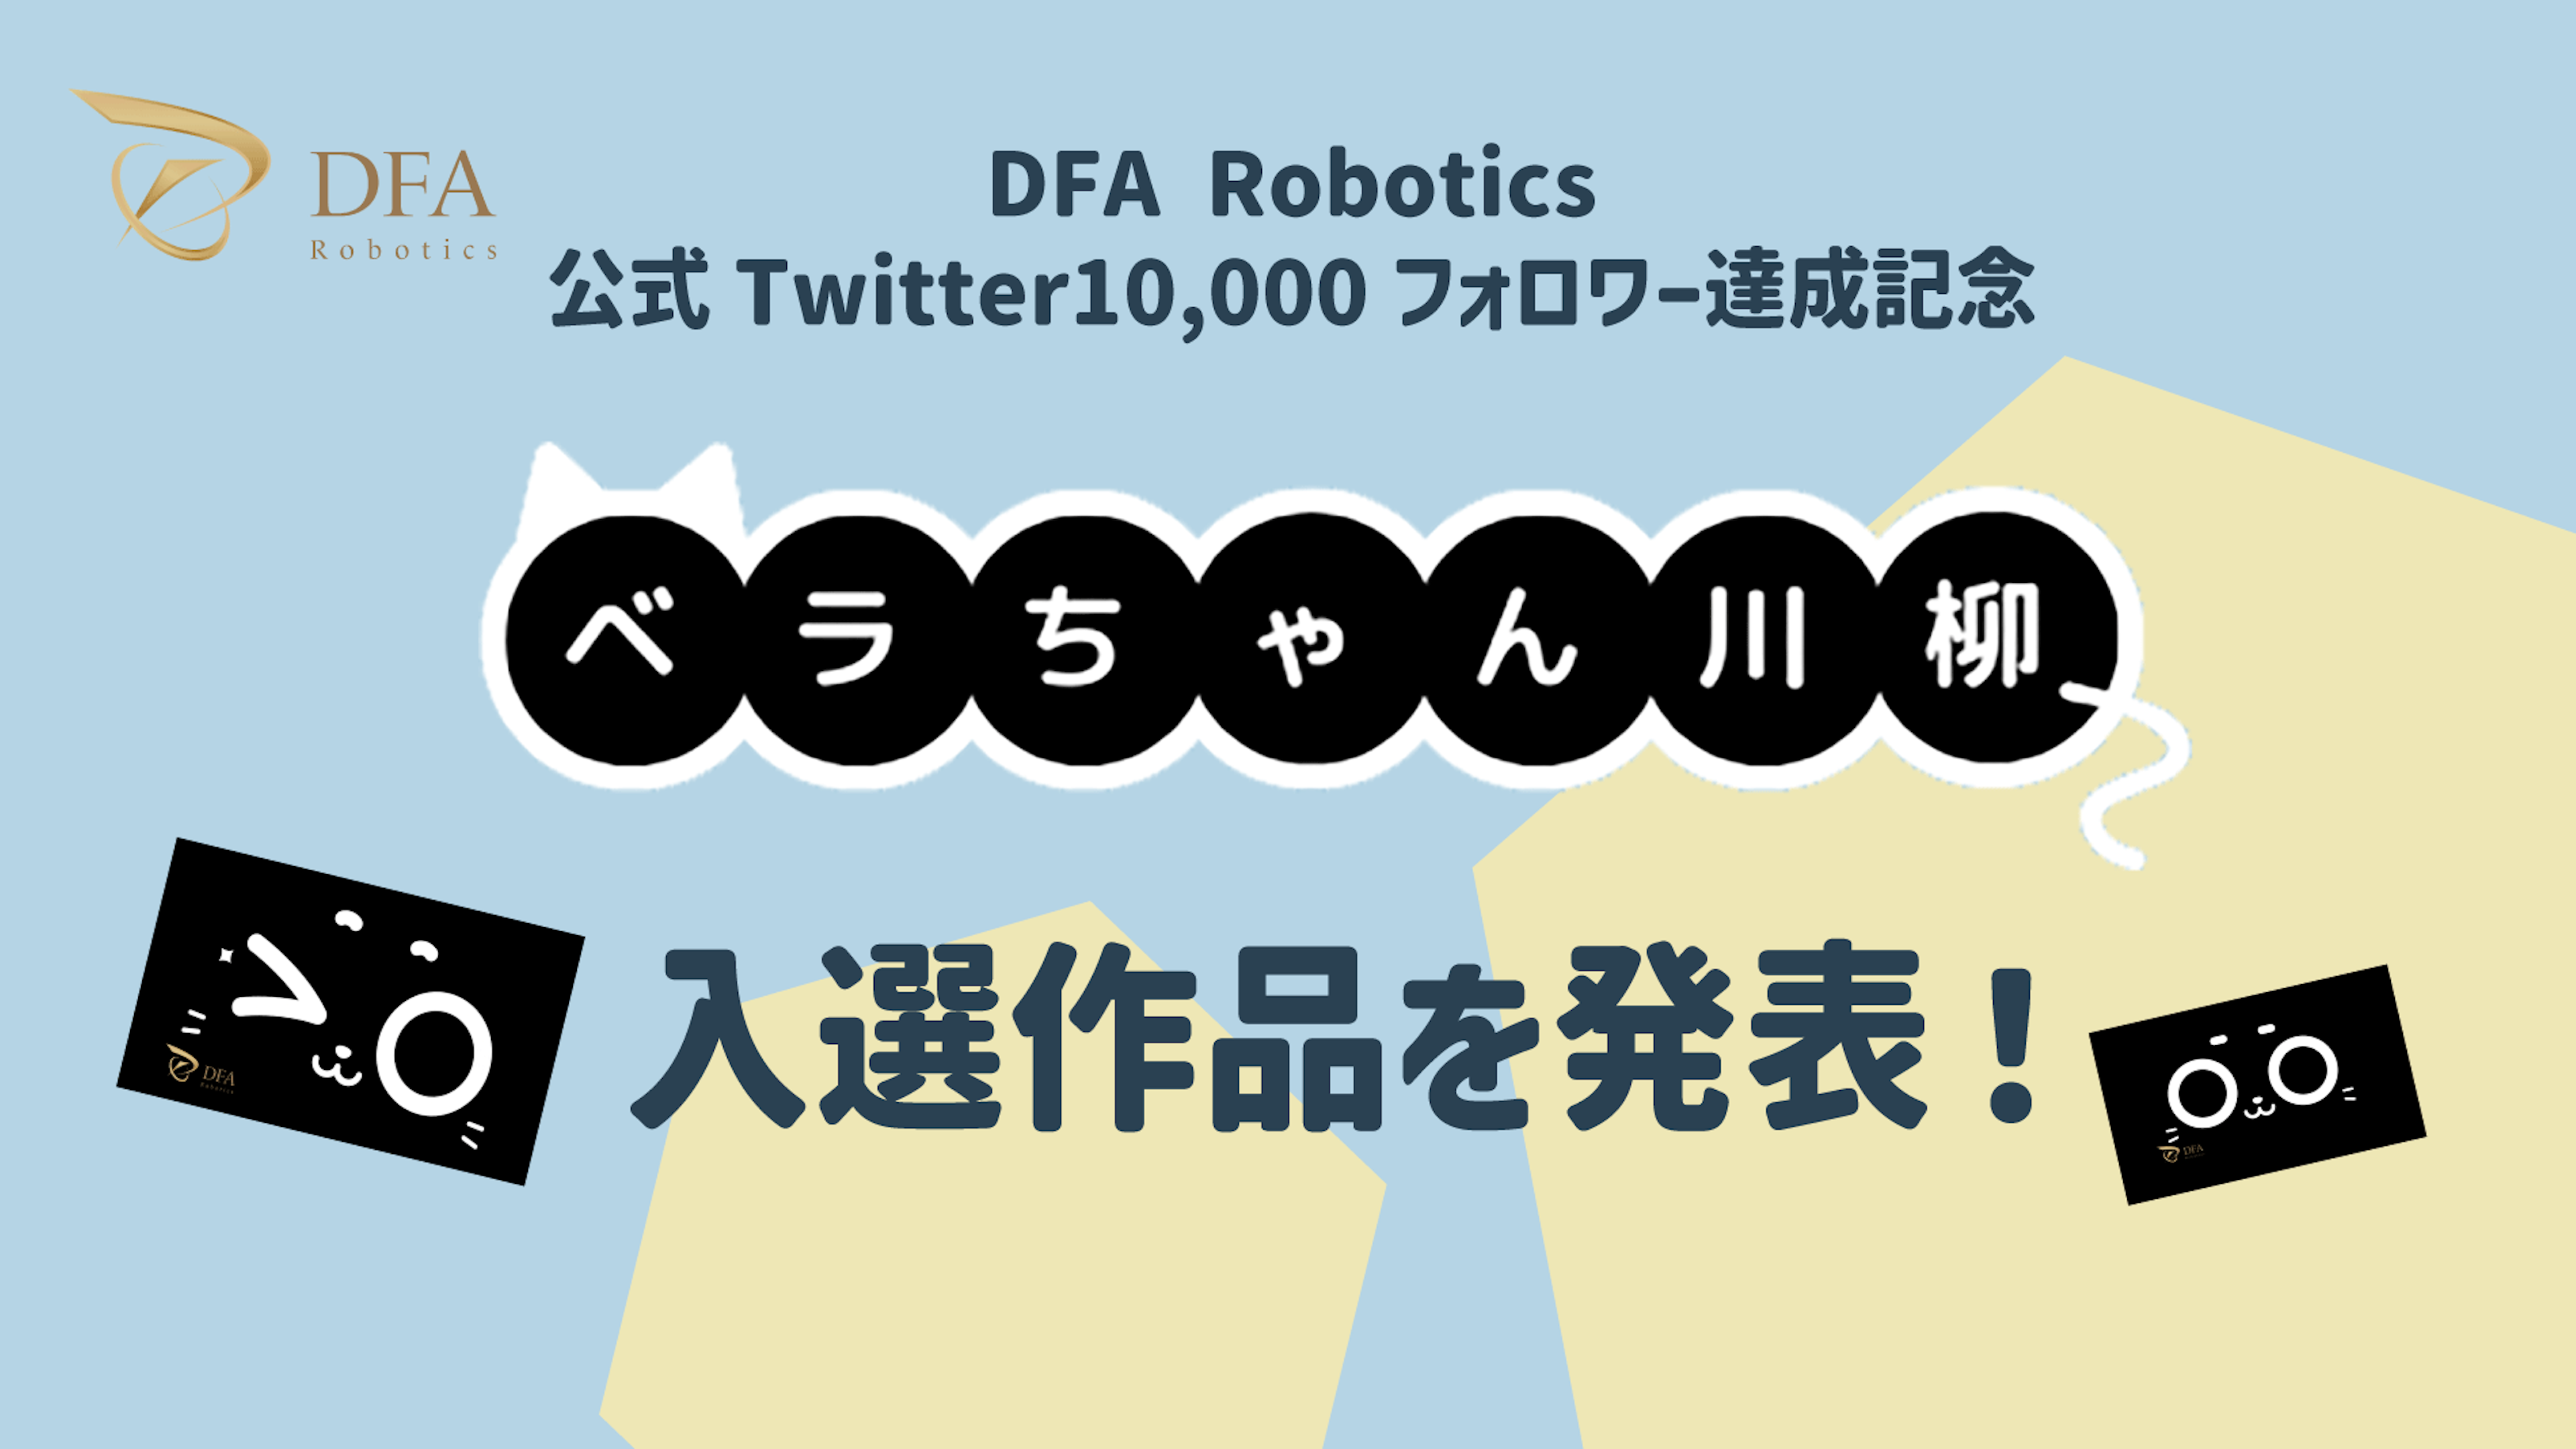 DFA Robotics主催「第1回ベラちゃん川柳」入選作品の発表

〜「一緒に働いてくれてありがとう」配膳ロボットと働くスタッフの声など12作品が入選〜のキービジュアル